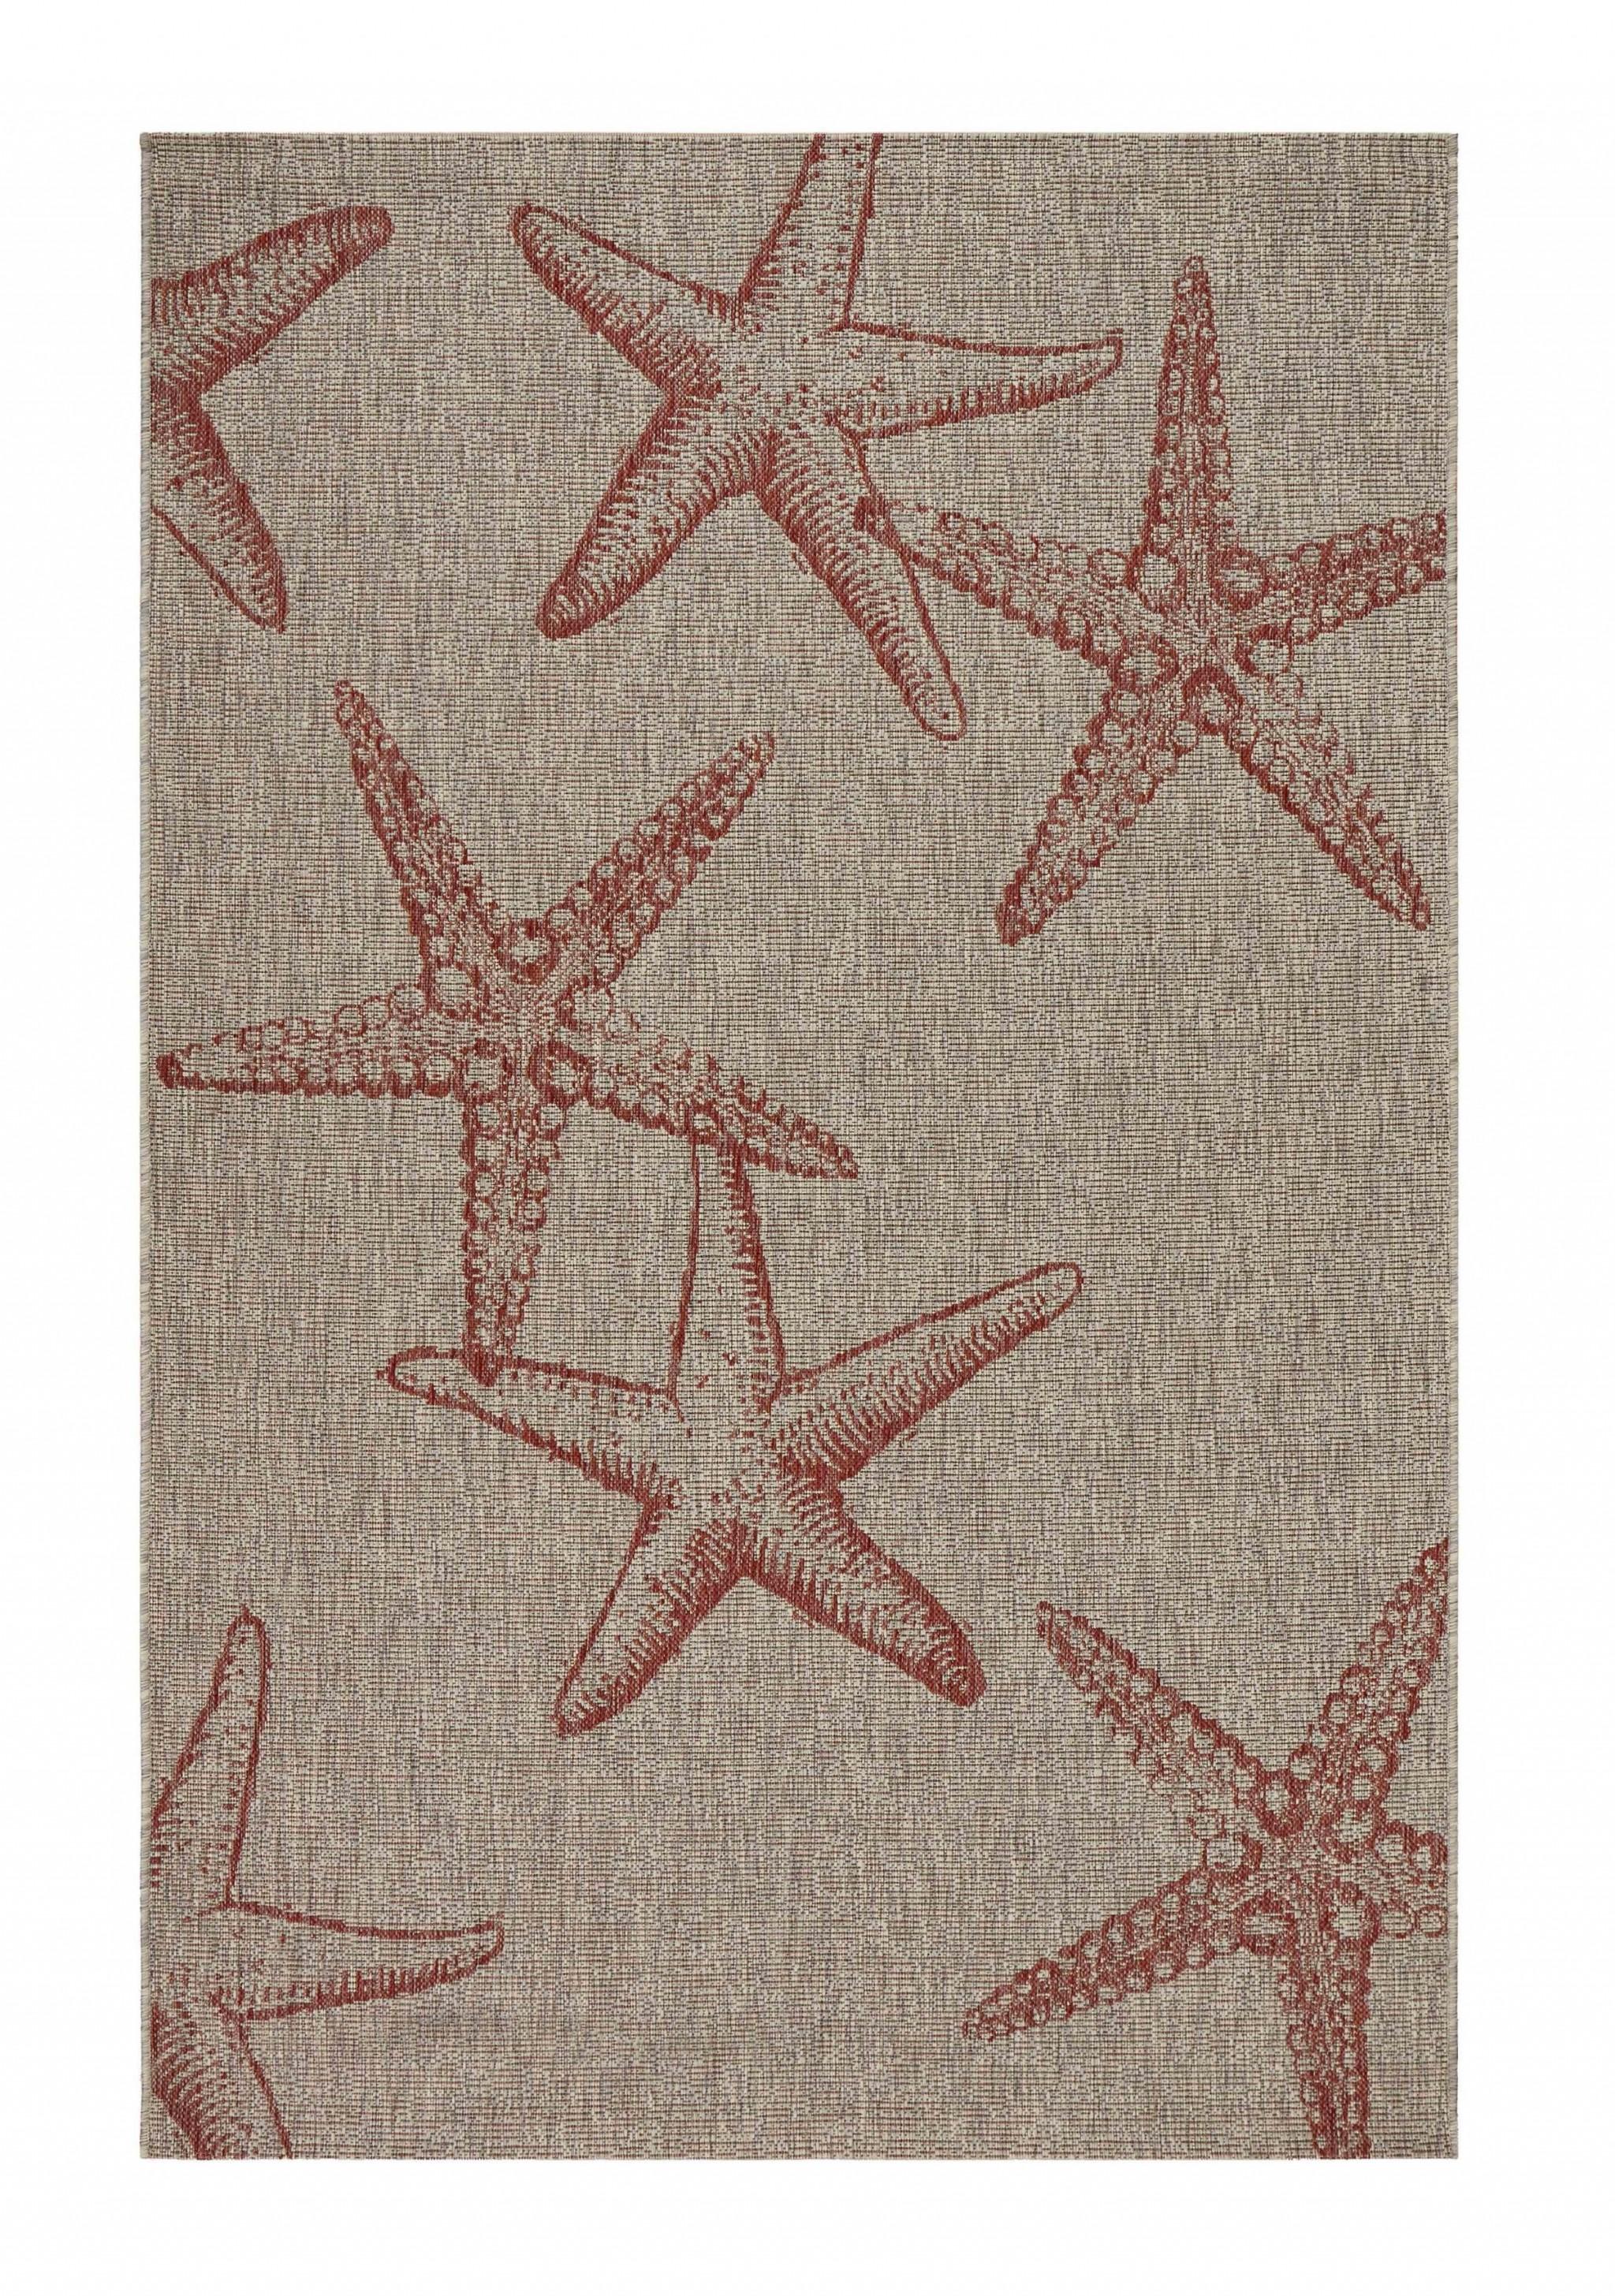 8’ x 9’ Red Starfish Indoor Outdoor Area Rug